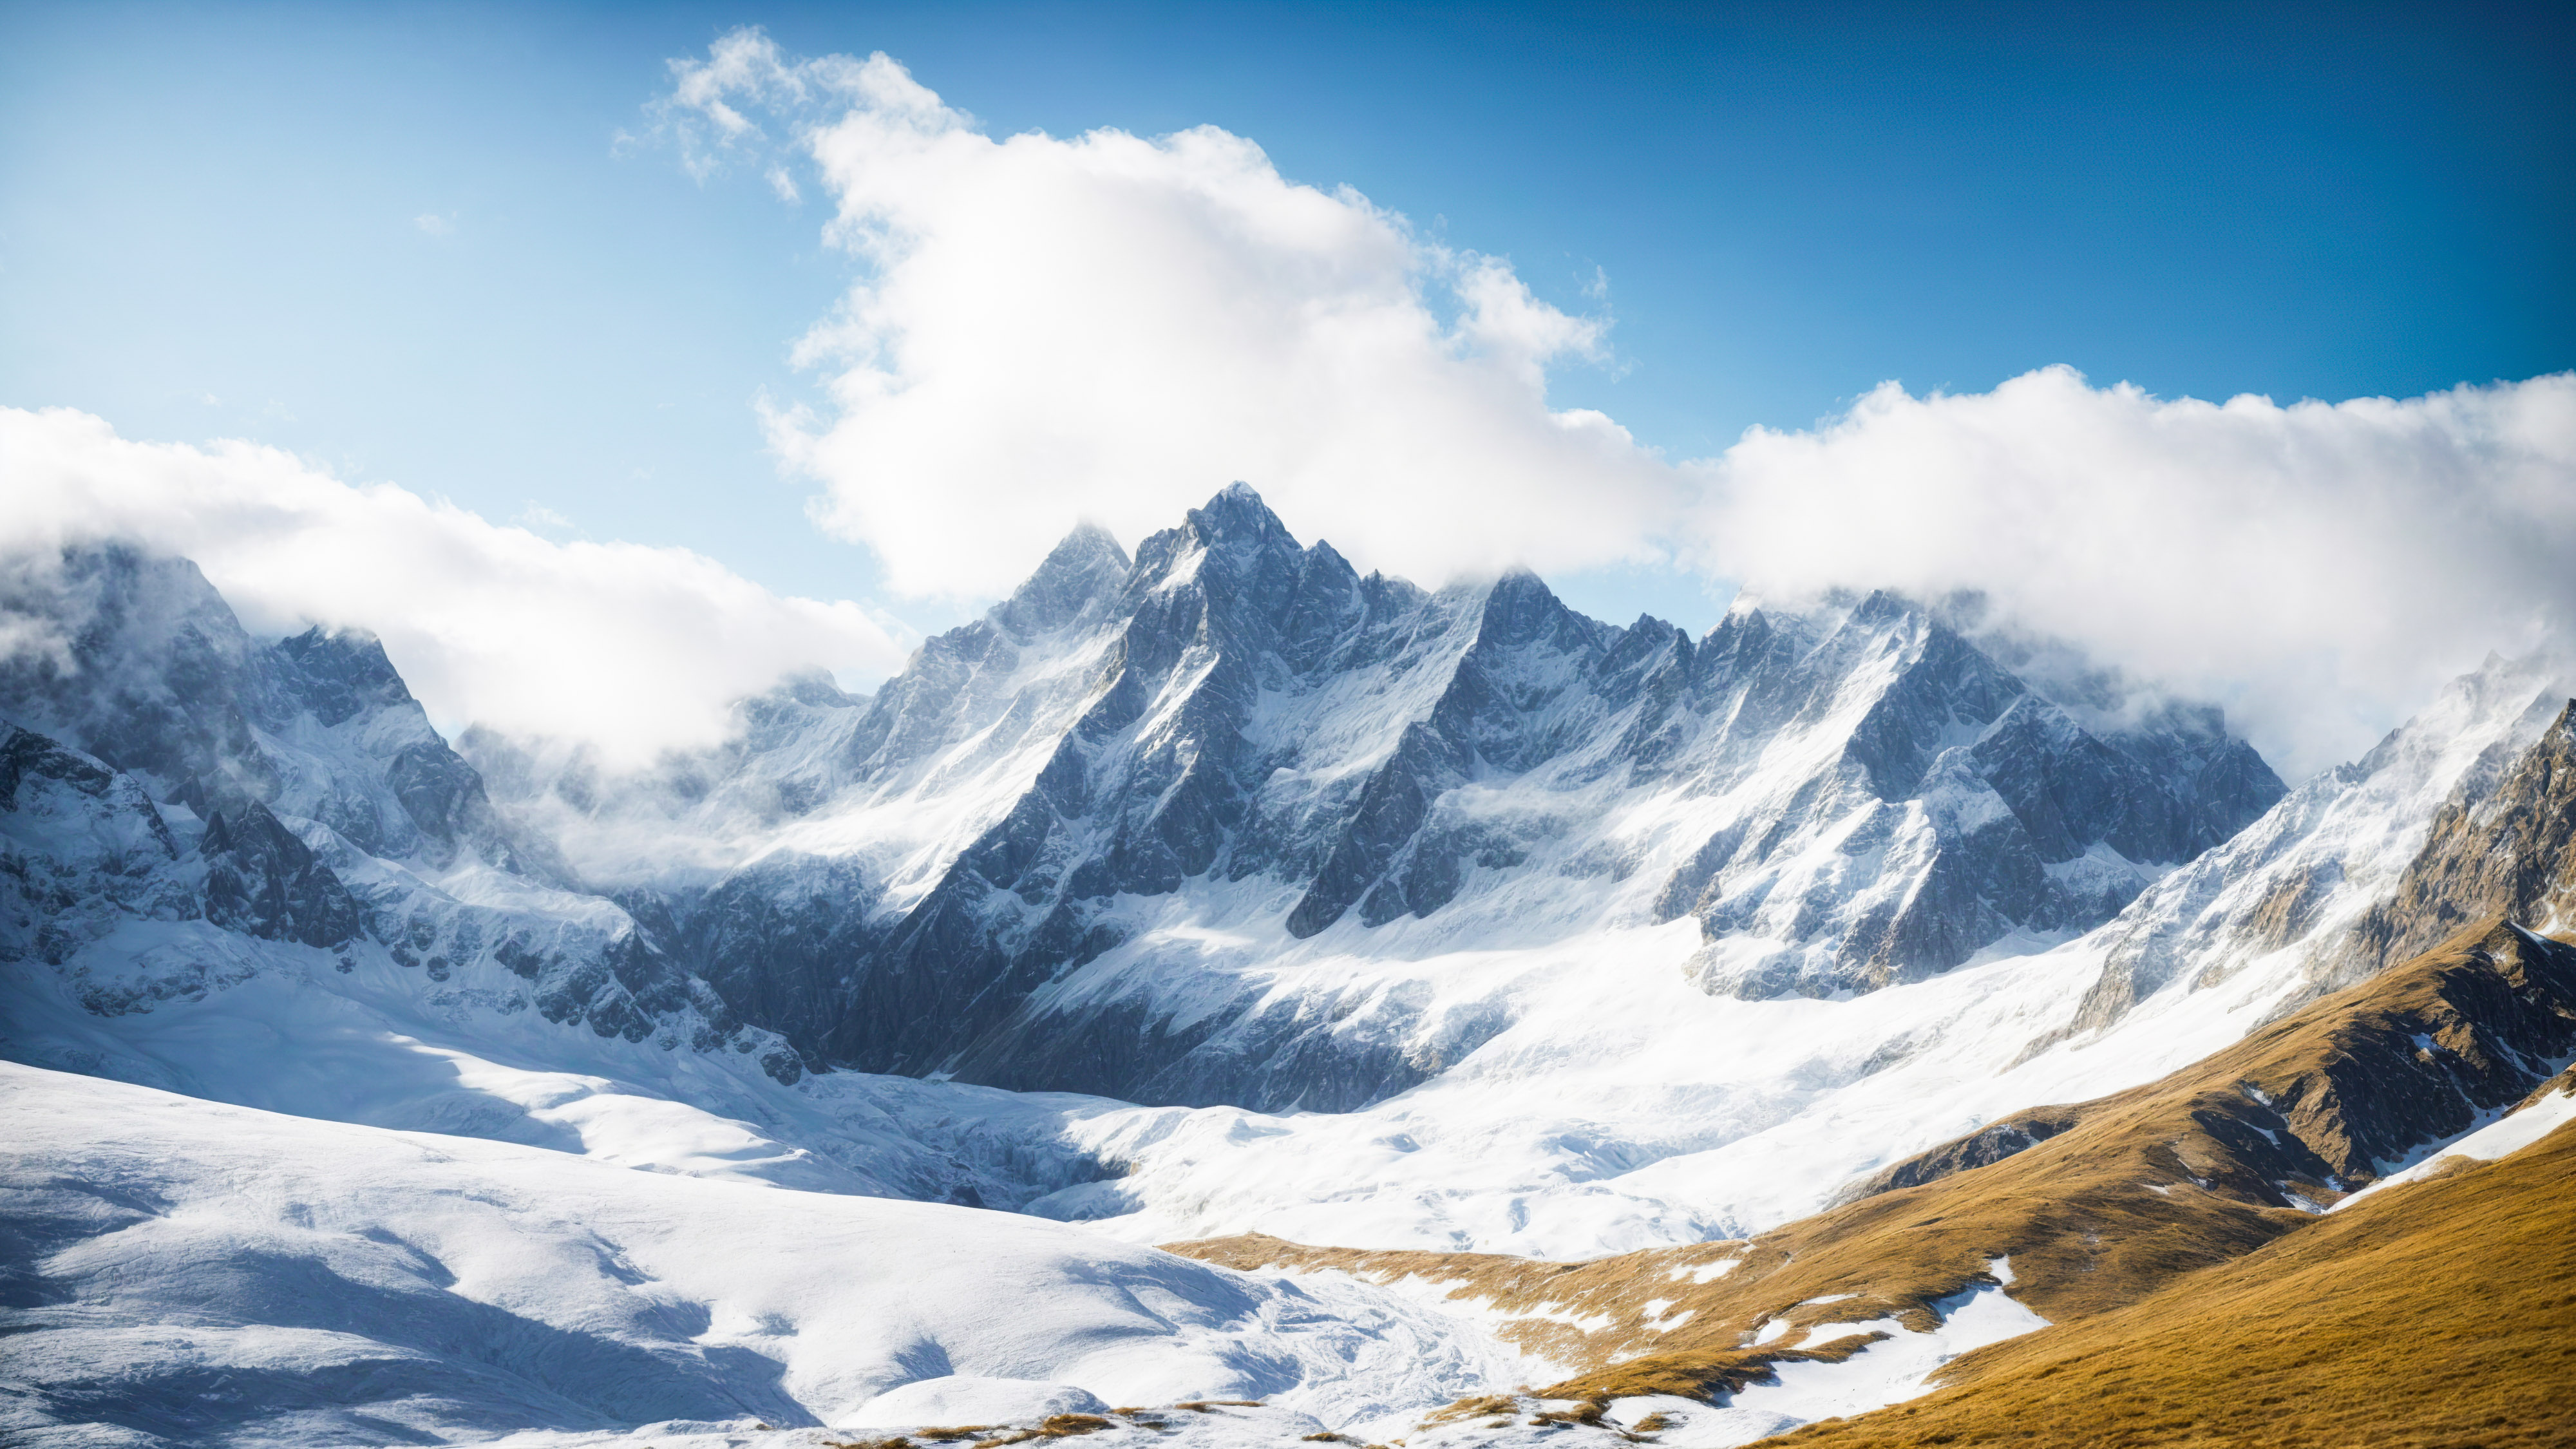 Téléchargez ce fond d'écran nature pour ordinateur de bureau en HD, capturant une vue époustouflante sur une montagne avec des pics dentelés, de la neige immaculée et un ciel bleu clair, et laissez votre écran devenir une porte vers les hauteurs majestueuses de la grandeur de la nature.